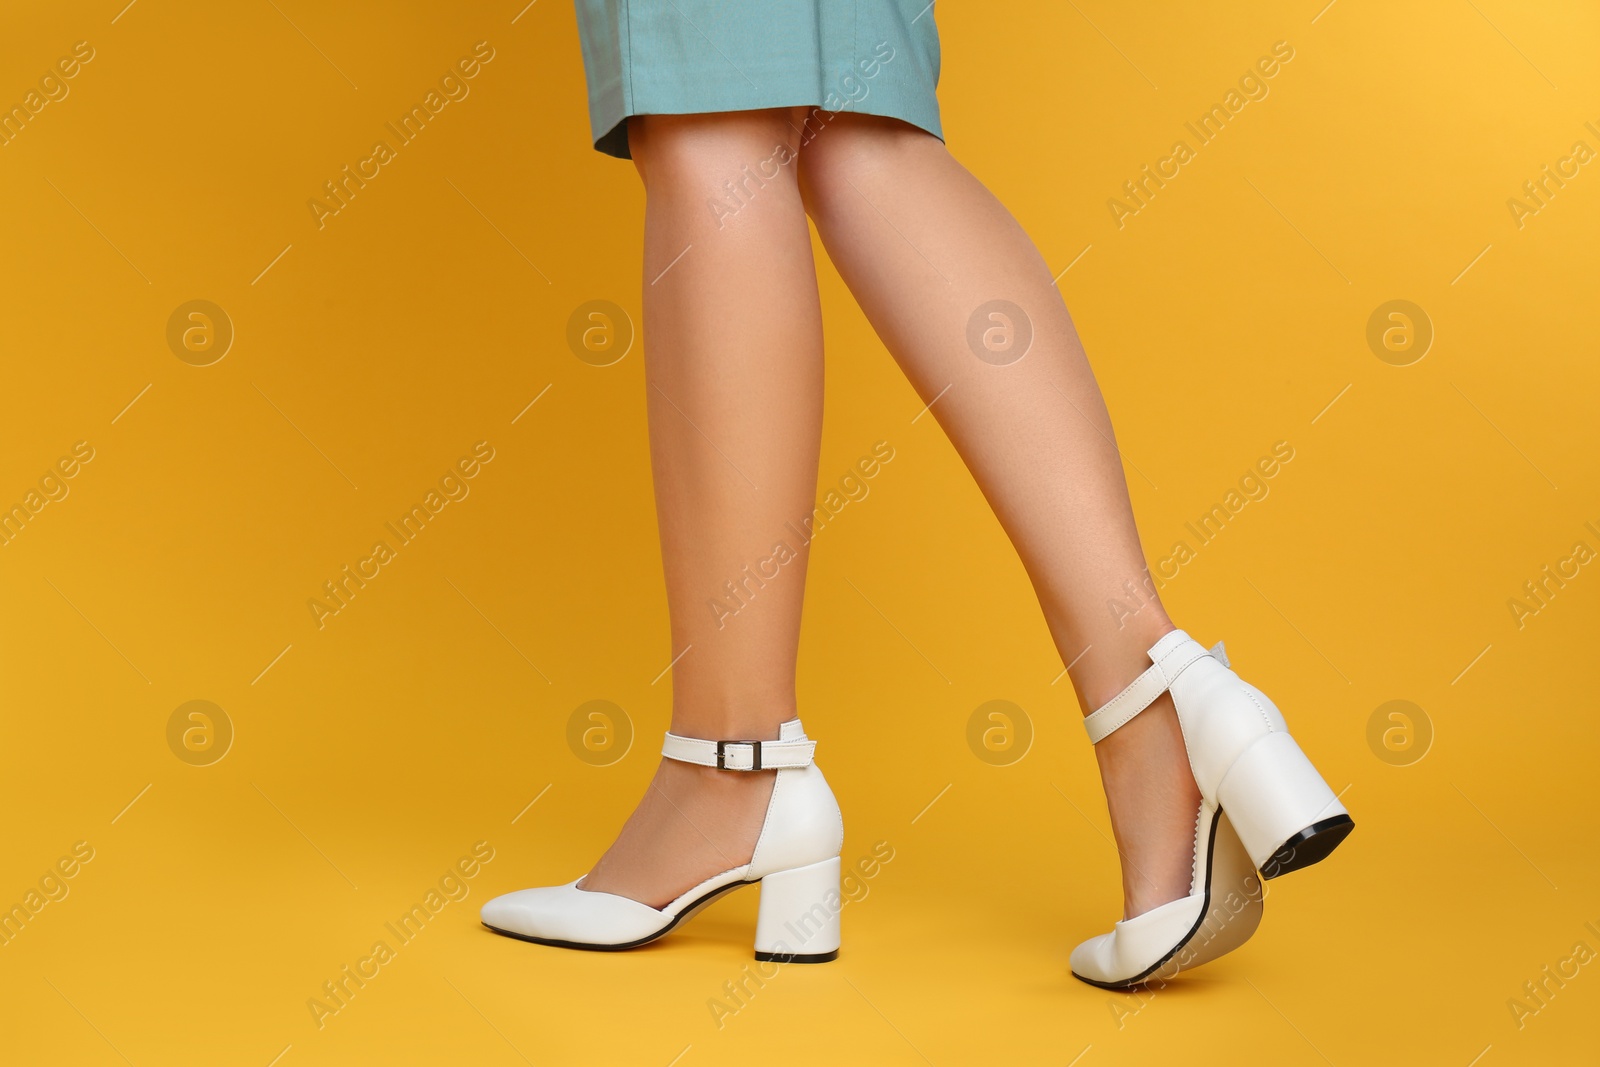 Photo of Woman wearing stylish shoes on yellow background, closeup